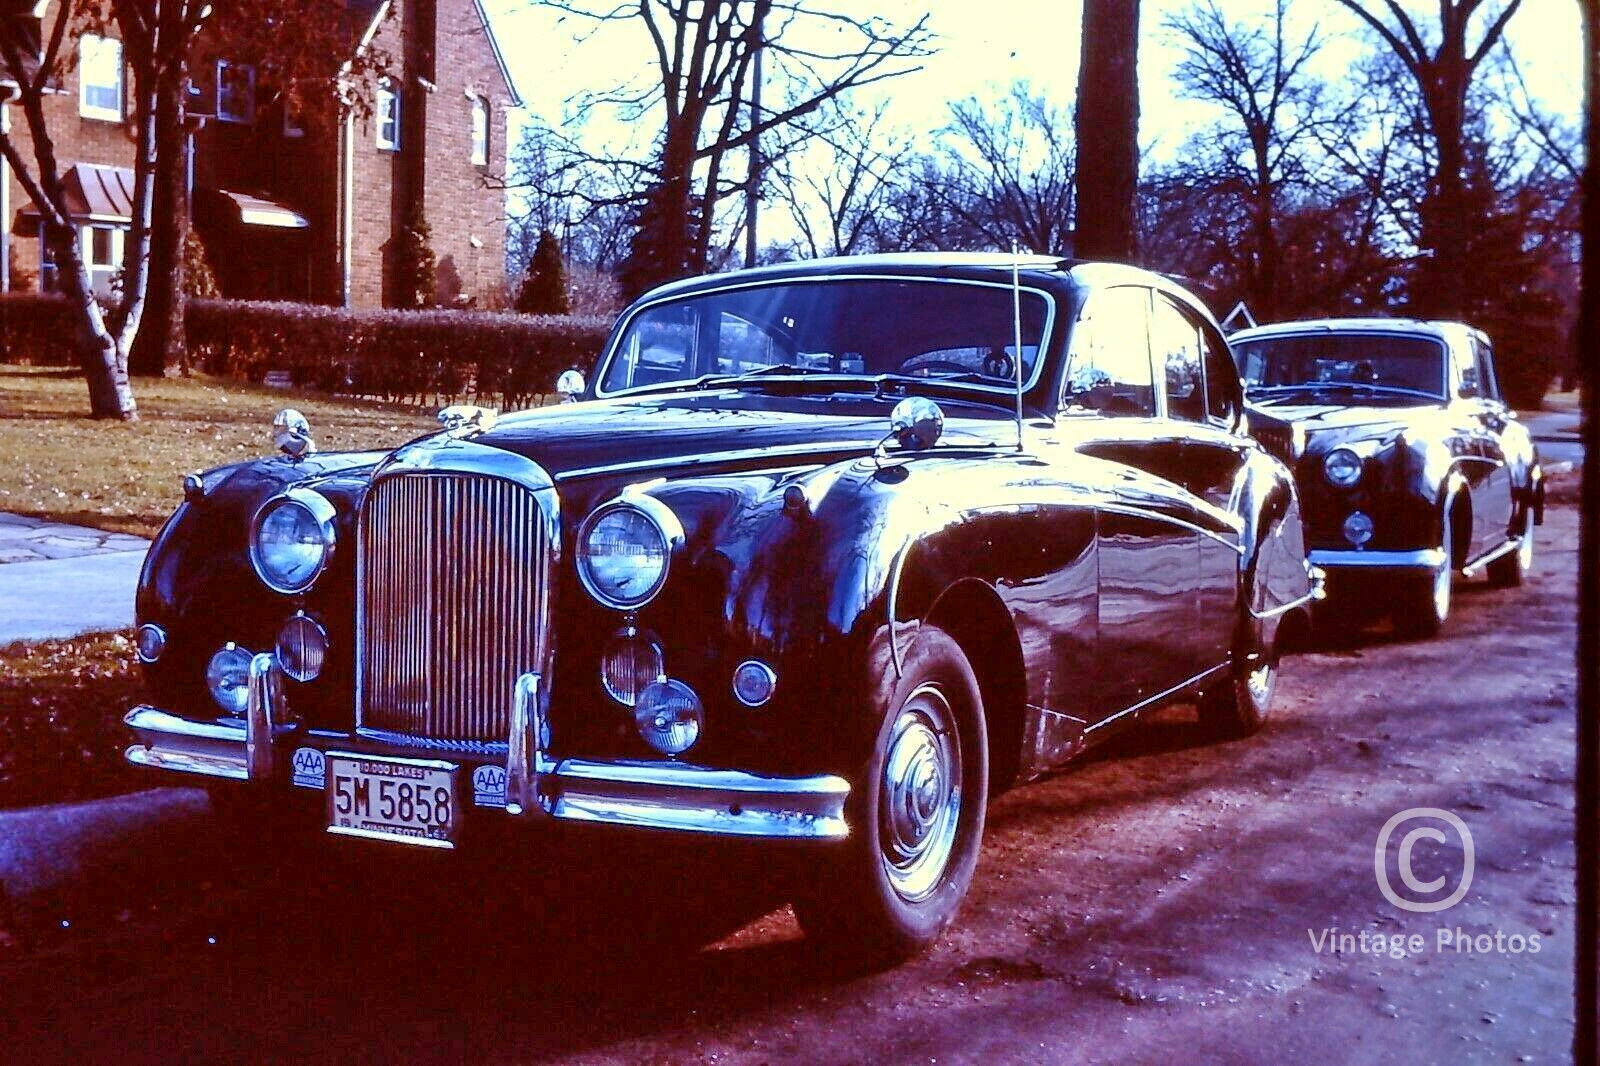 1962 Jaguar & Rolls Royce Parked on Street